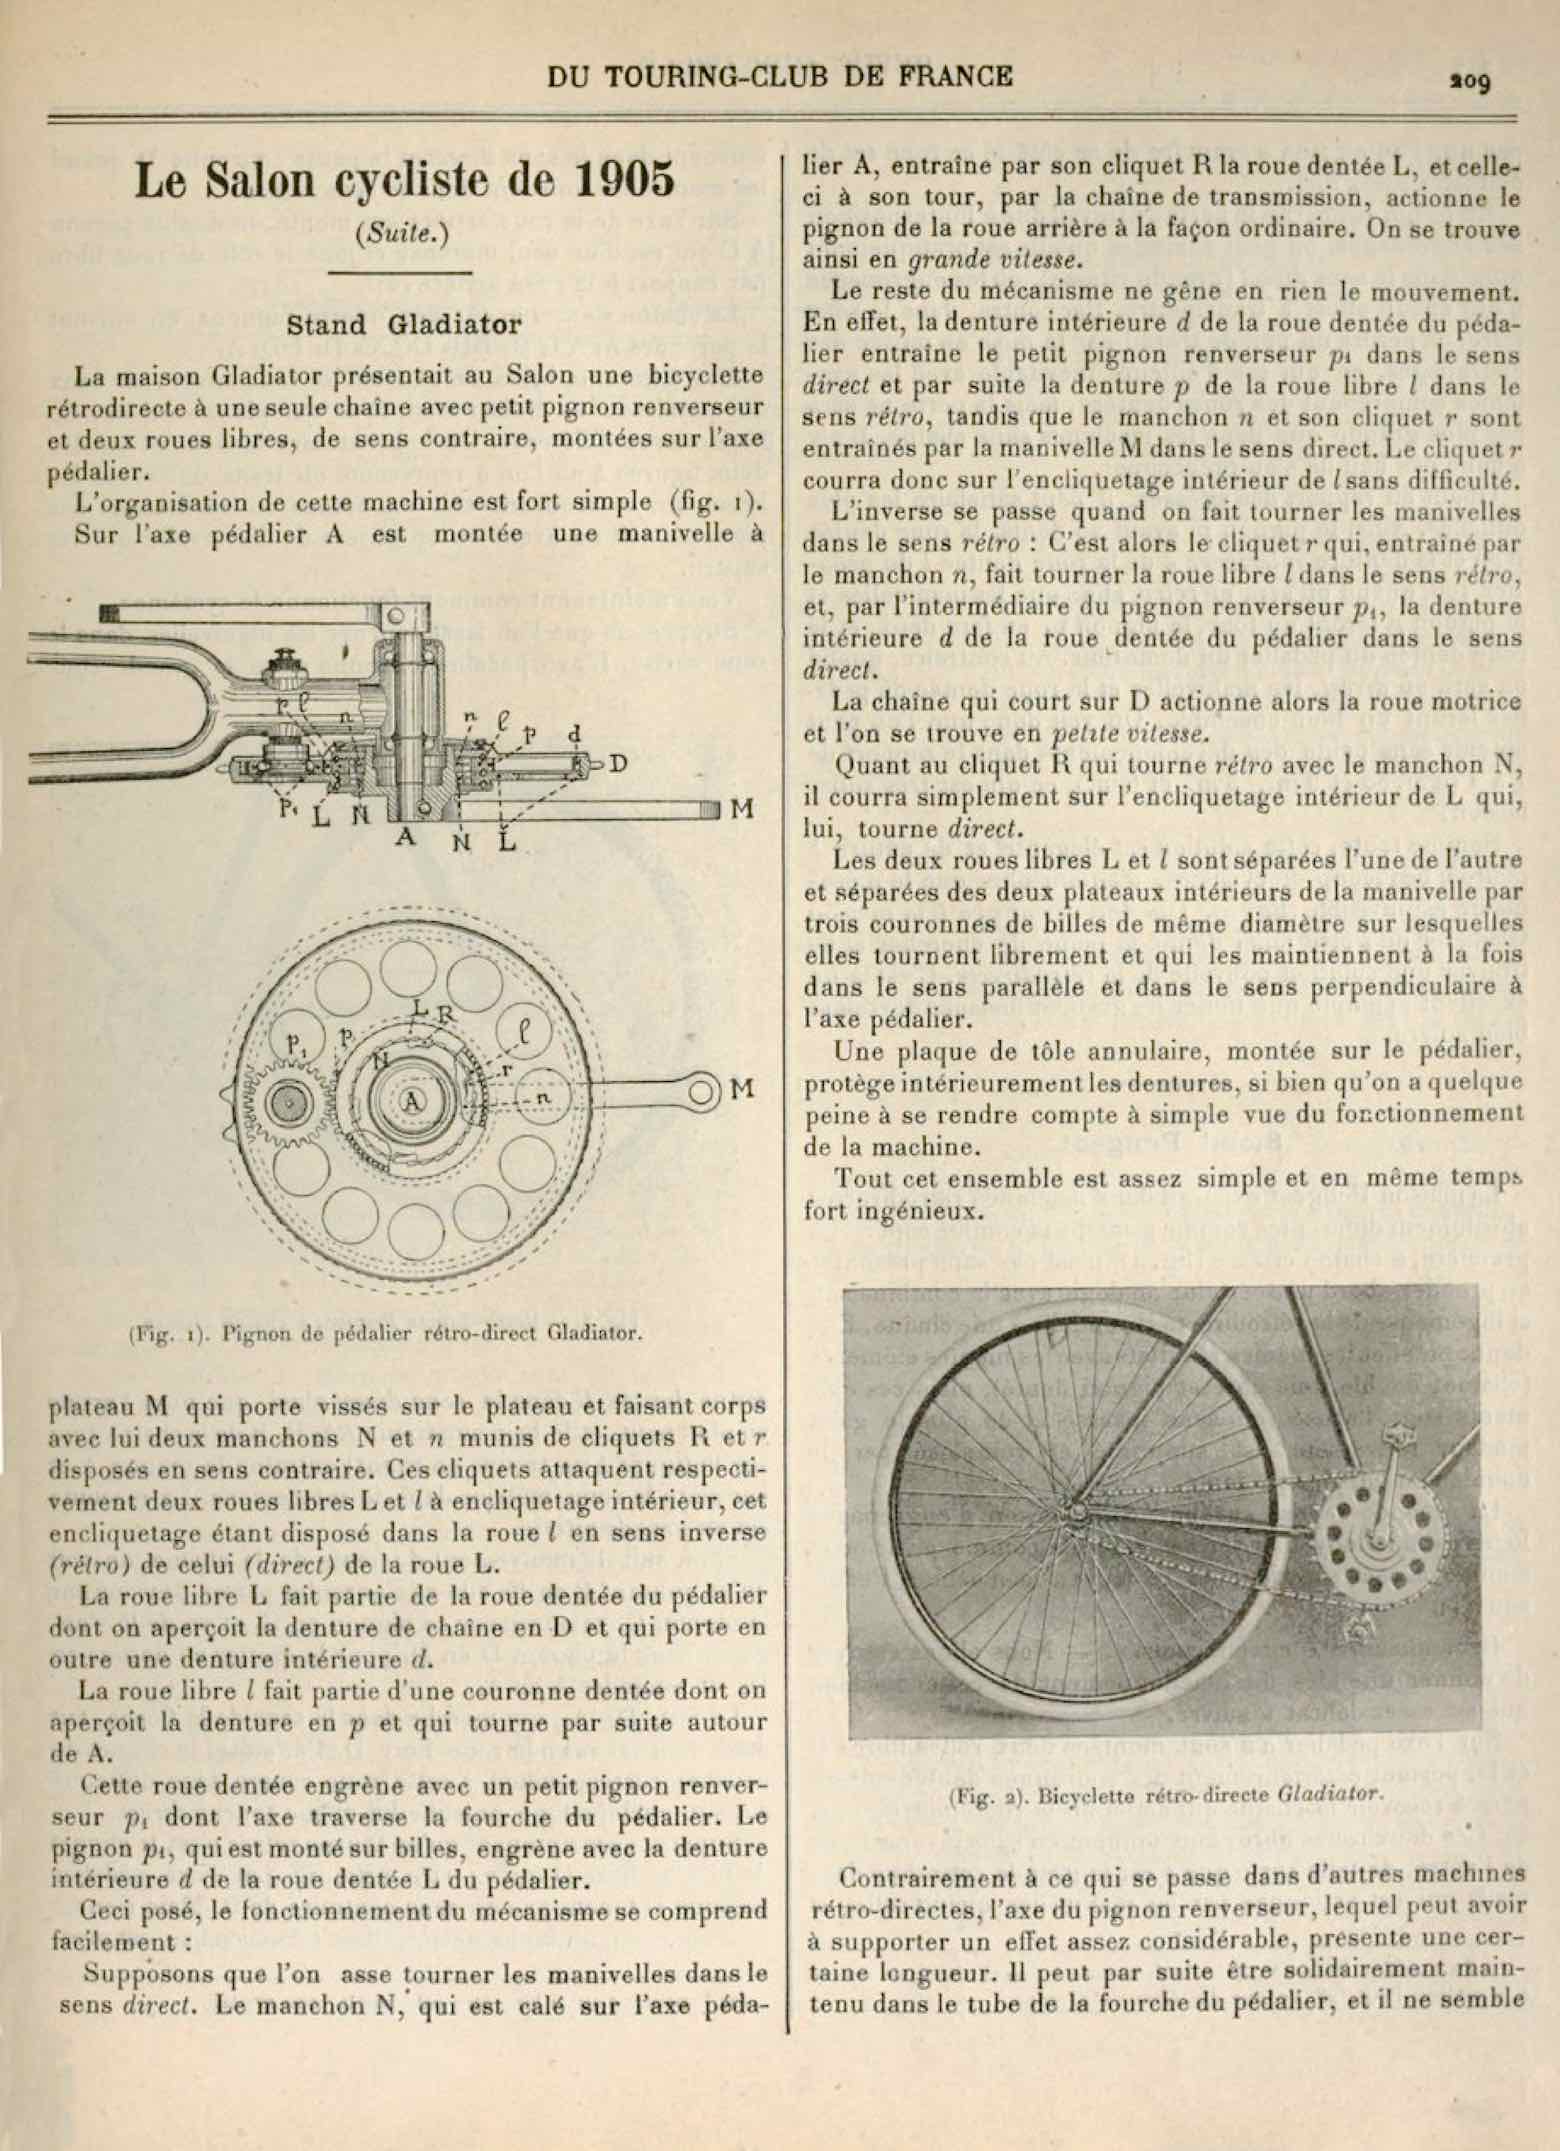 T.C.F. Revue Mensuelle May 1906 - Le Salon cycliste de 1905 (part III) scan 1 main image